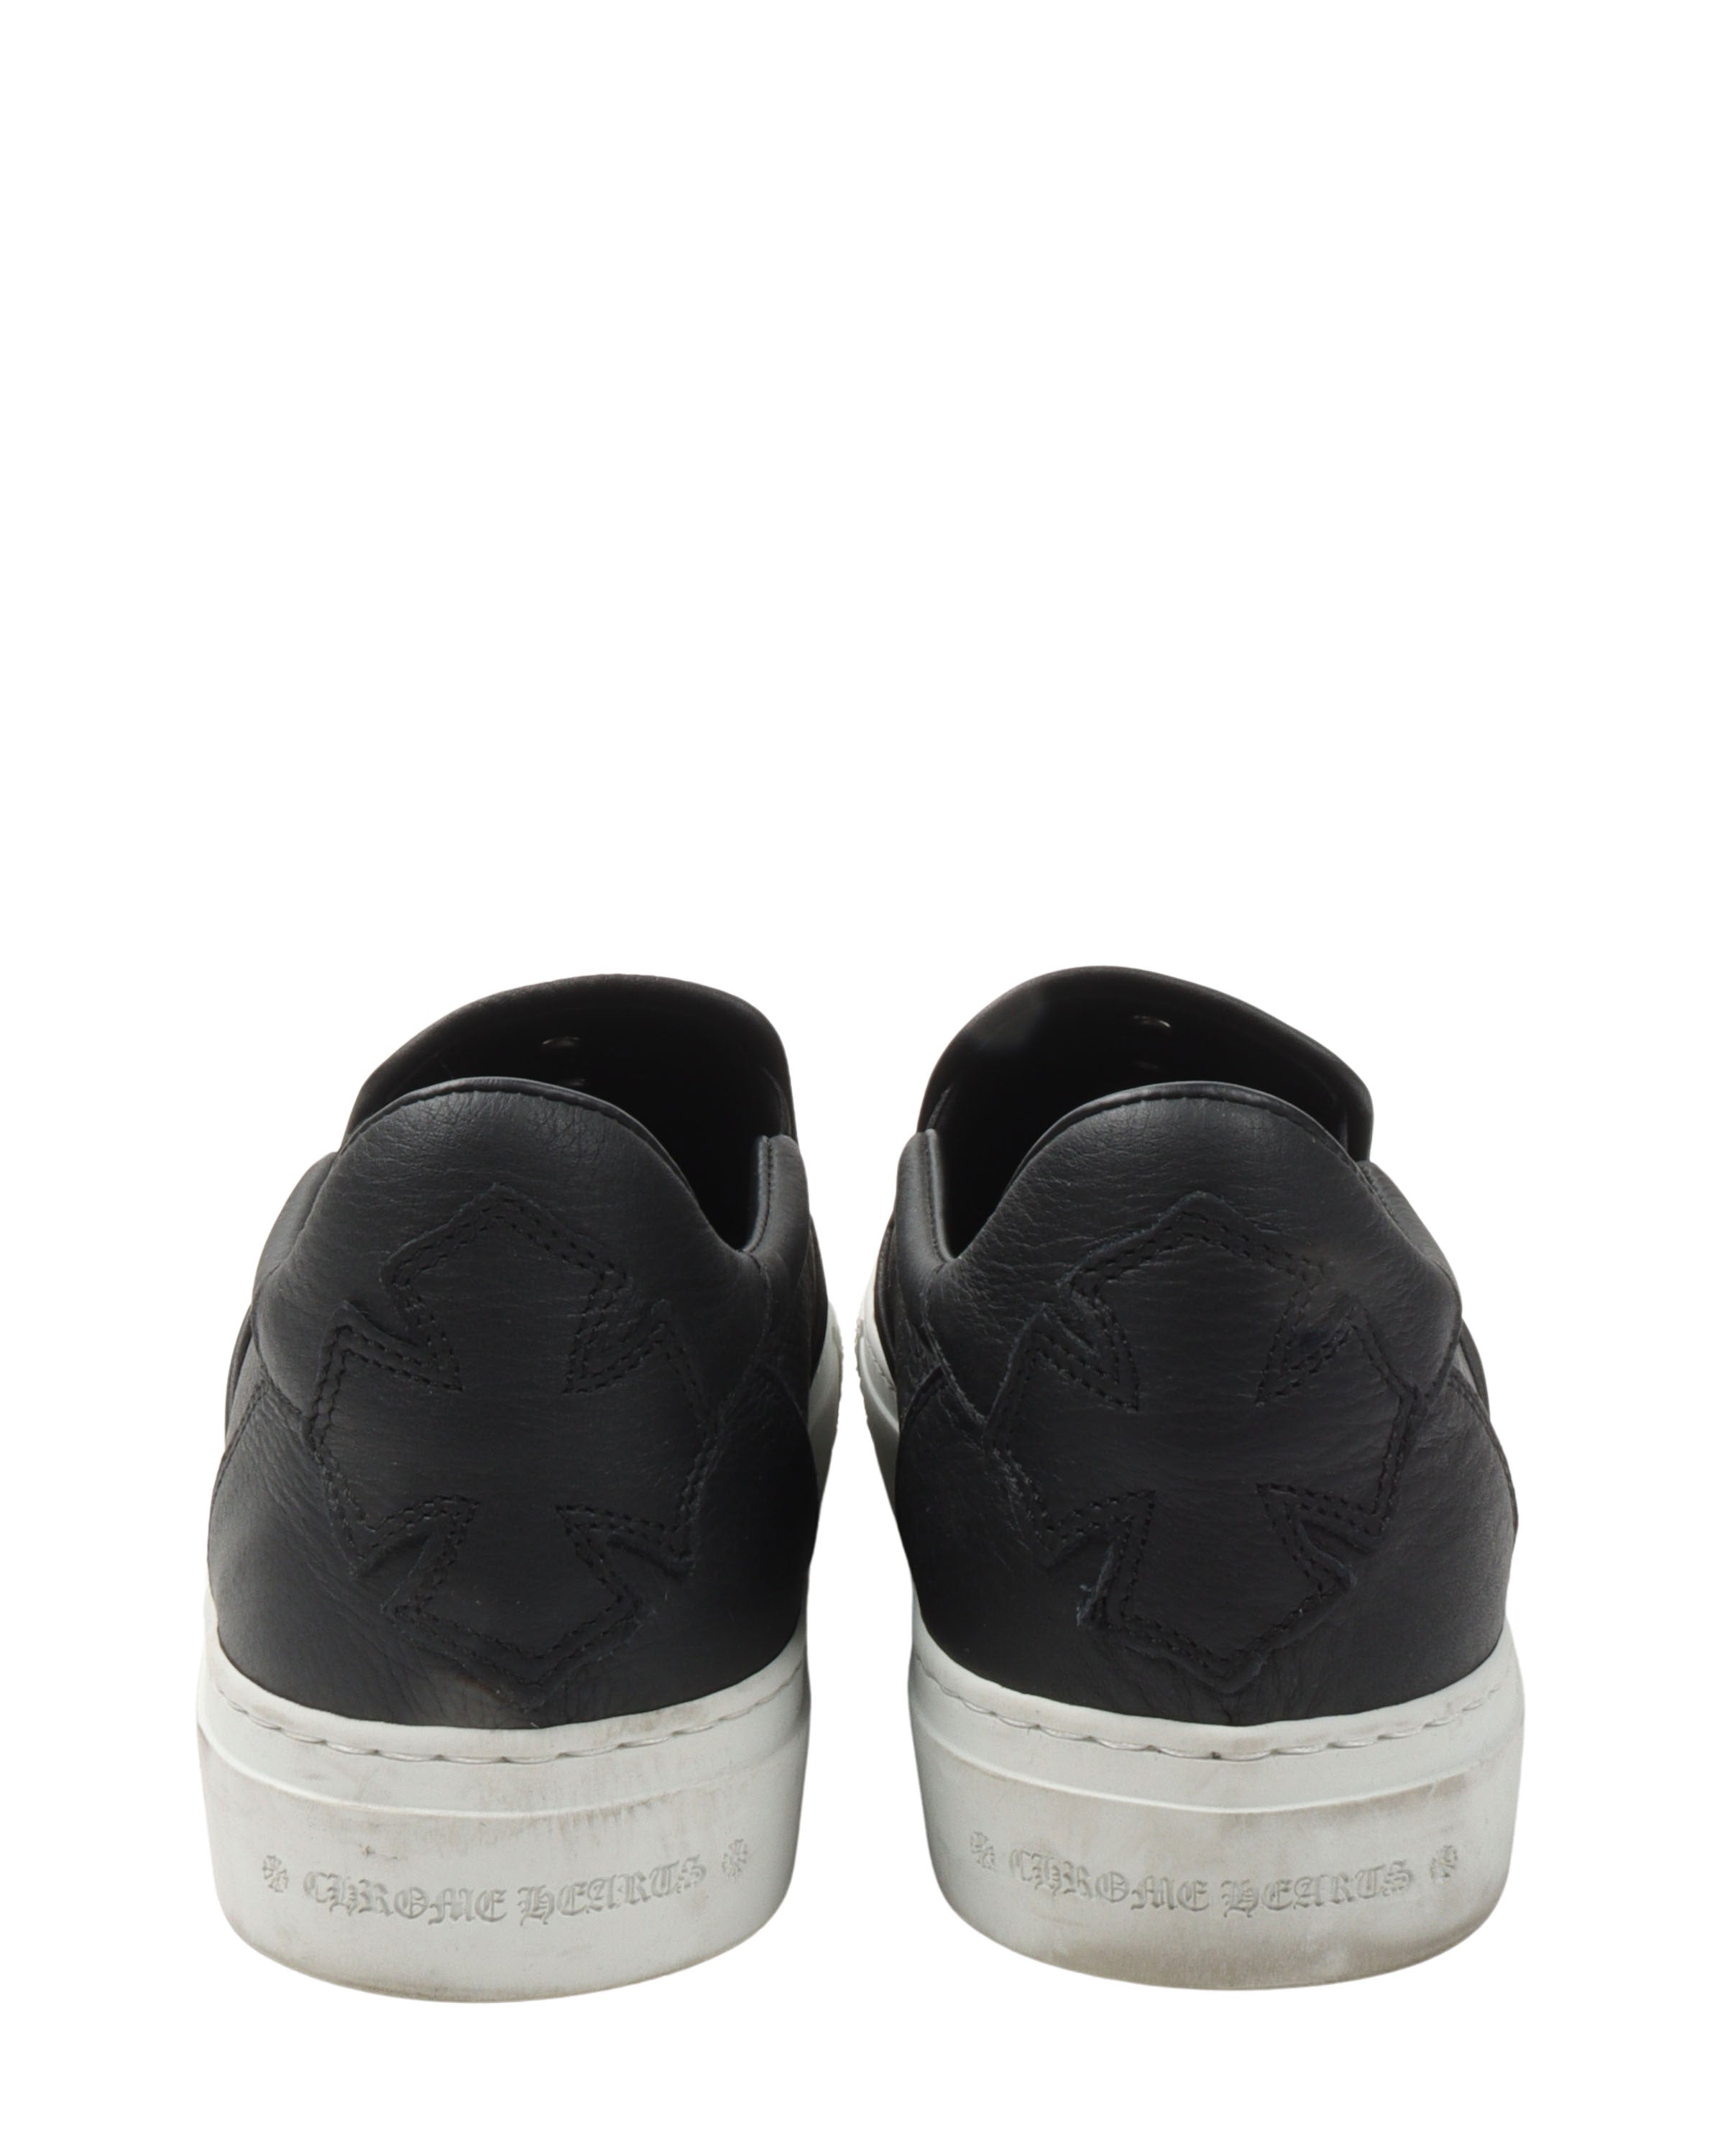 Dagger Embellished Slip-On Leather Sneaker